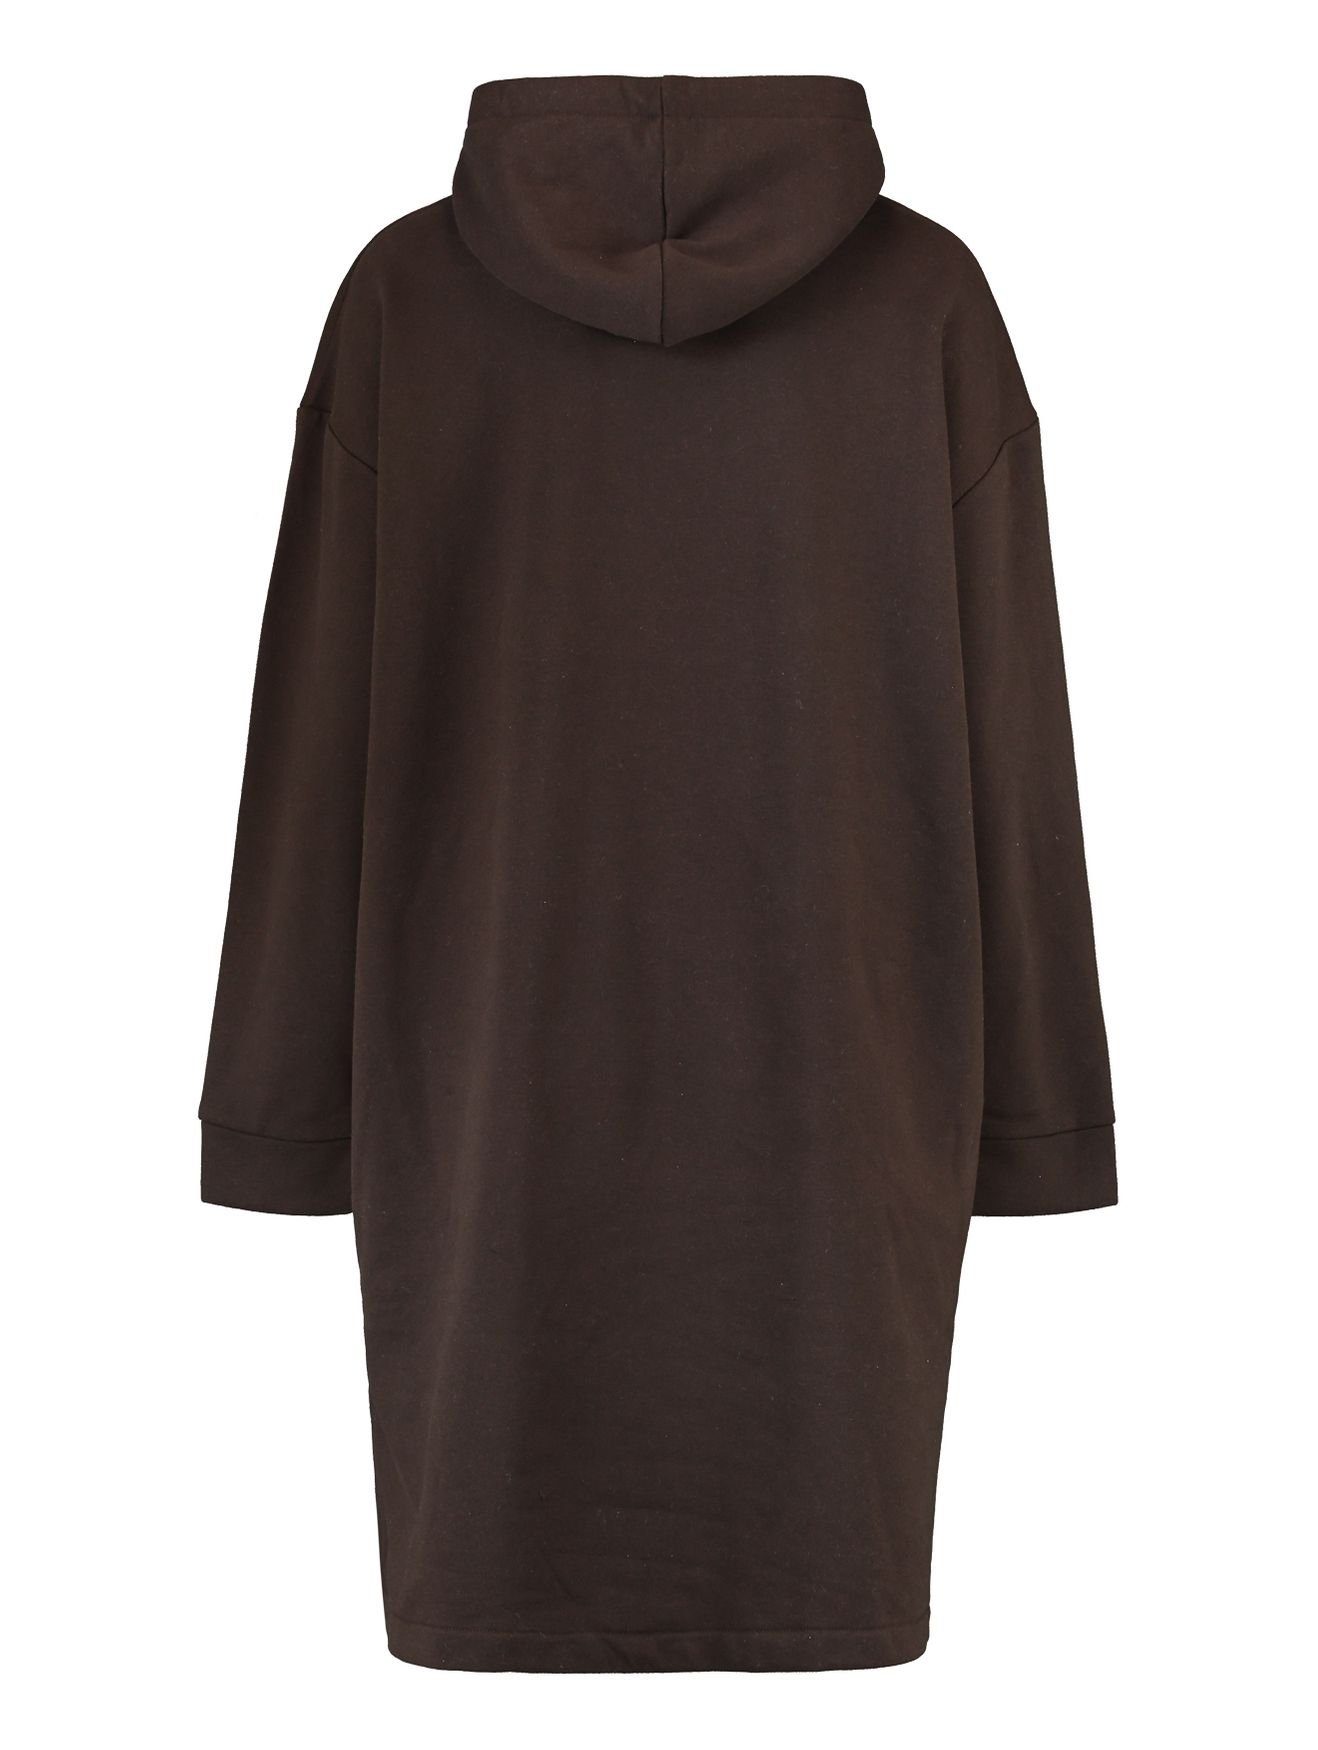 HaILY’S Shirtkleid Hoodie Kapuzen Mini Knielang (lang) in Kleid Braun-2 Sweat Dress 4705 Pullover SWERA